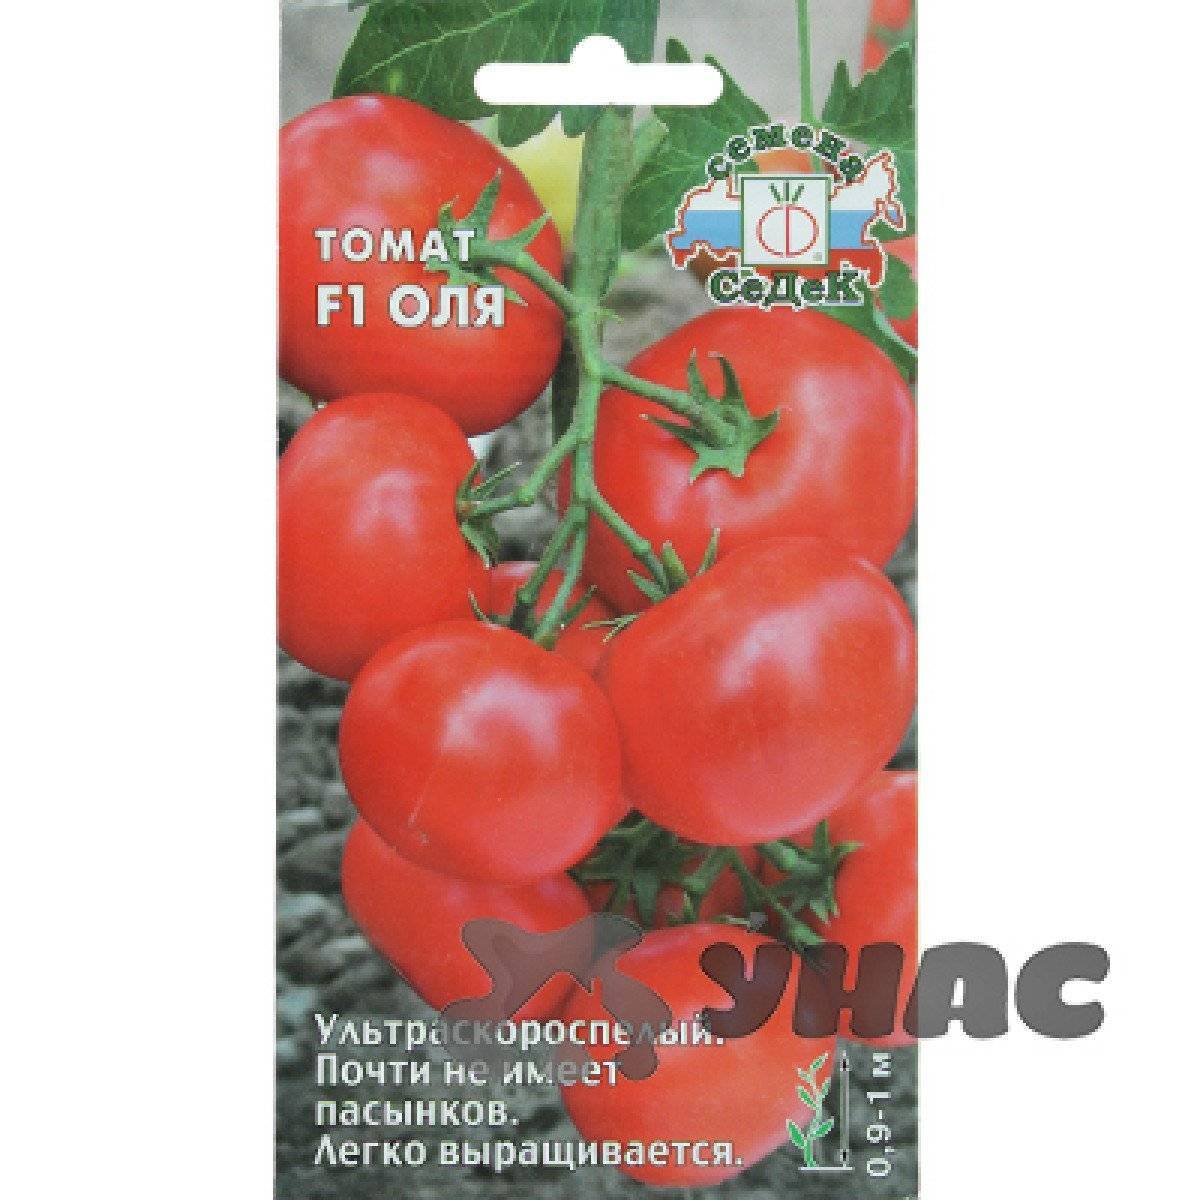 Сорт томатов оля f1. Семена томат Оля СЕДЕК. Томат Оля f1. Томат Оля f1 характеристика и описание.